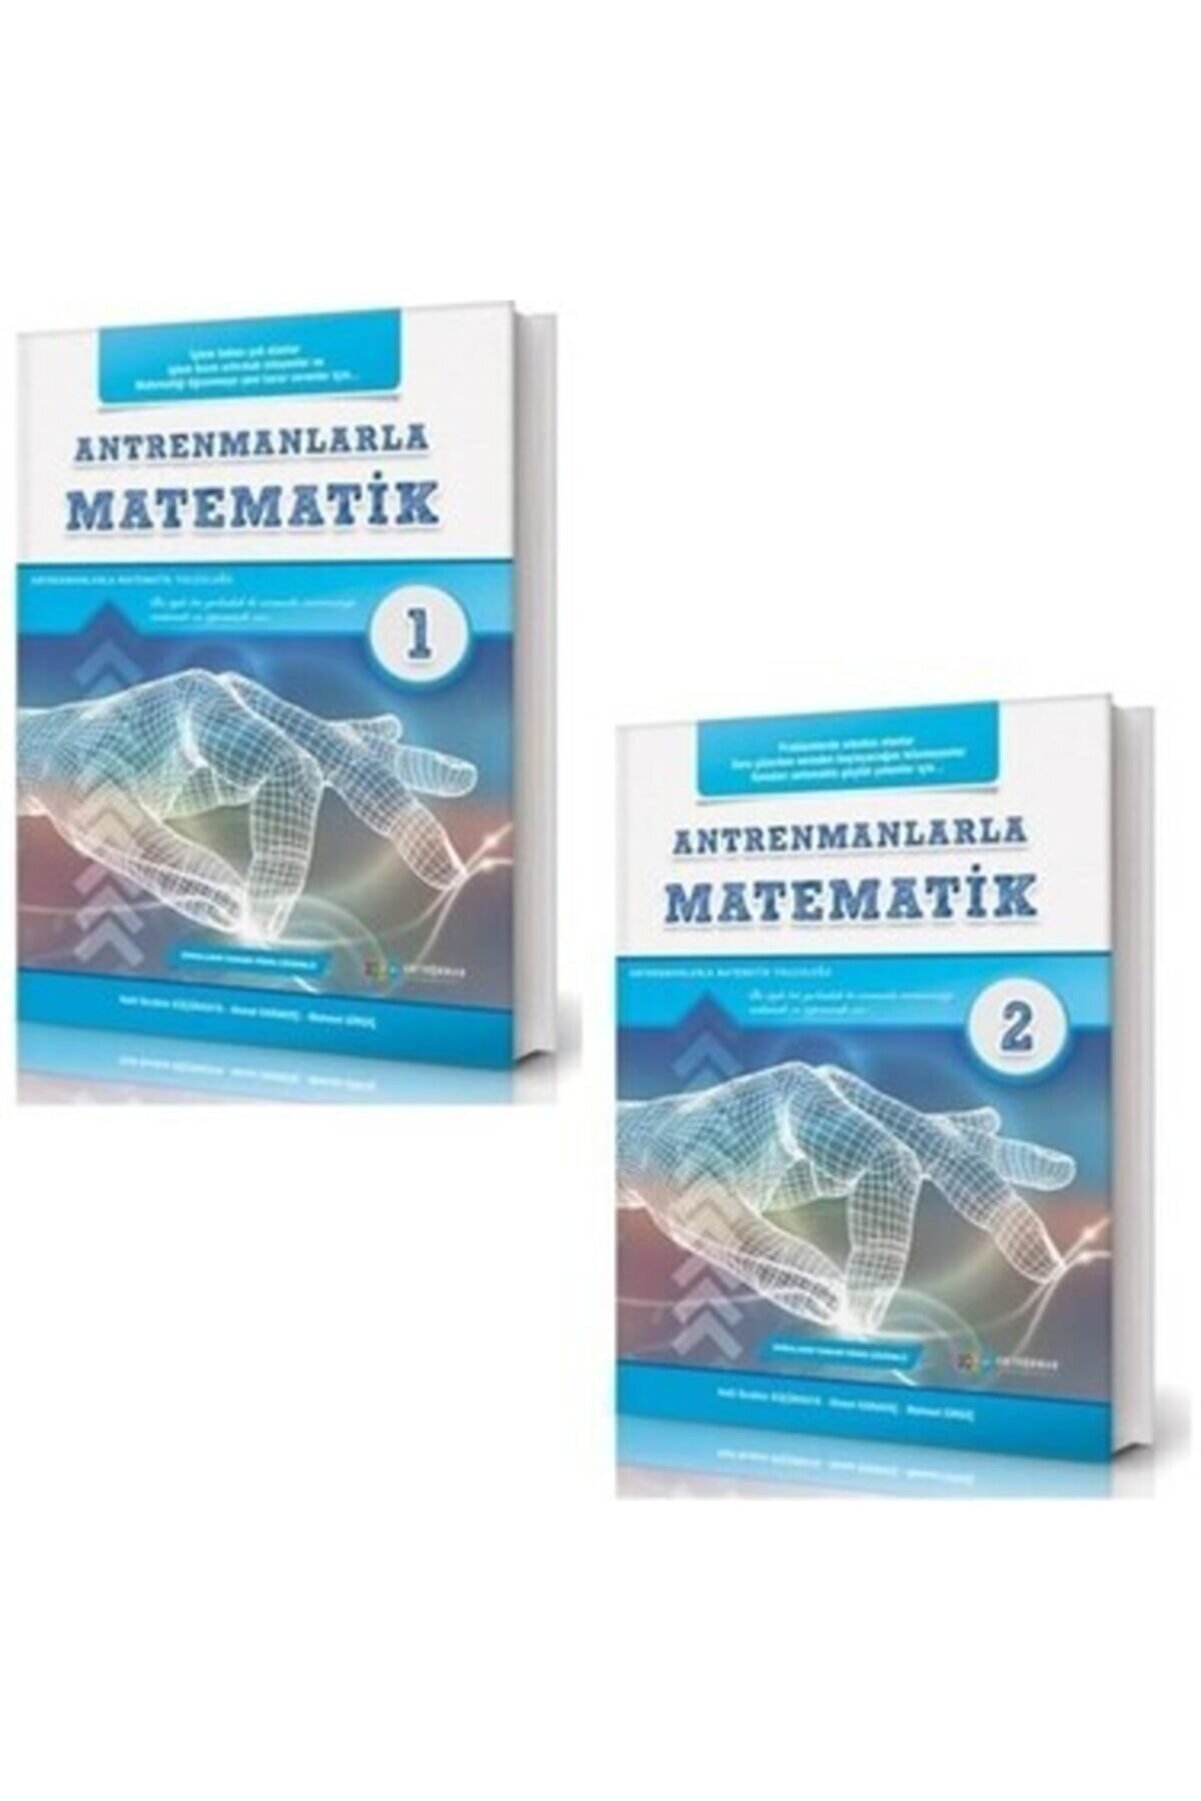 Antrenman Yayınları Süper 2'li Şook Fiyat! Antrenman Yayınları Antrenmanlarla Matematik 1 Ve 2. Kitap Birarada.